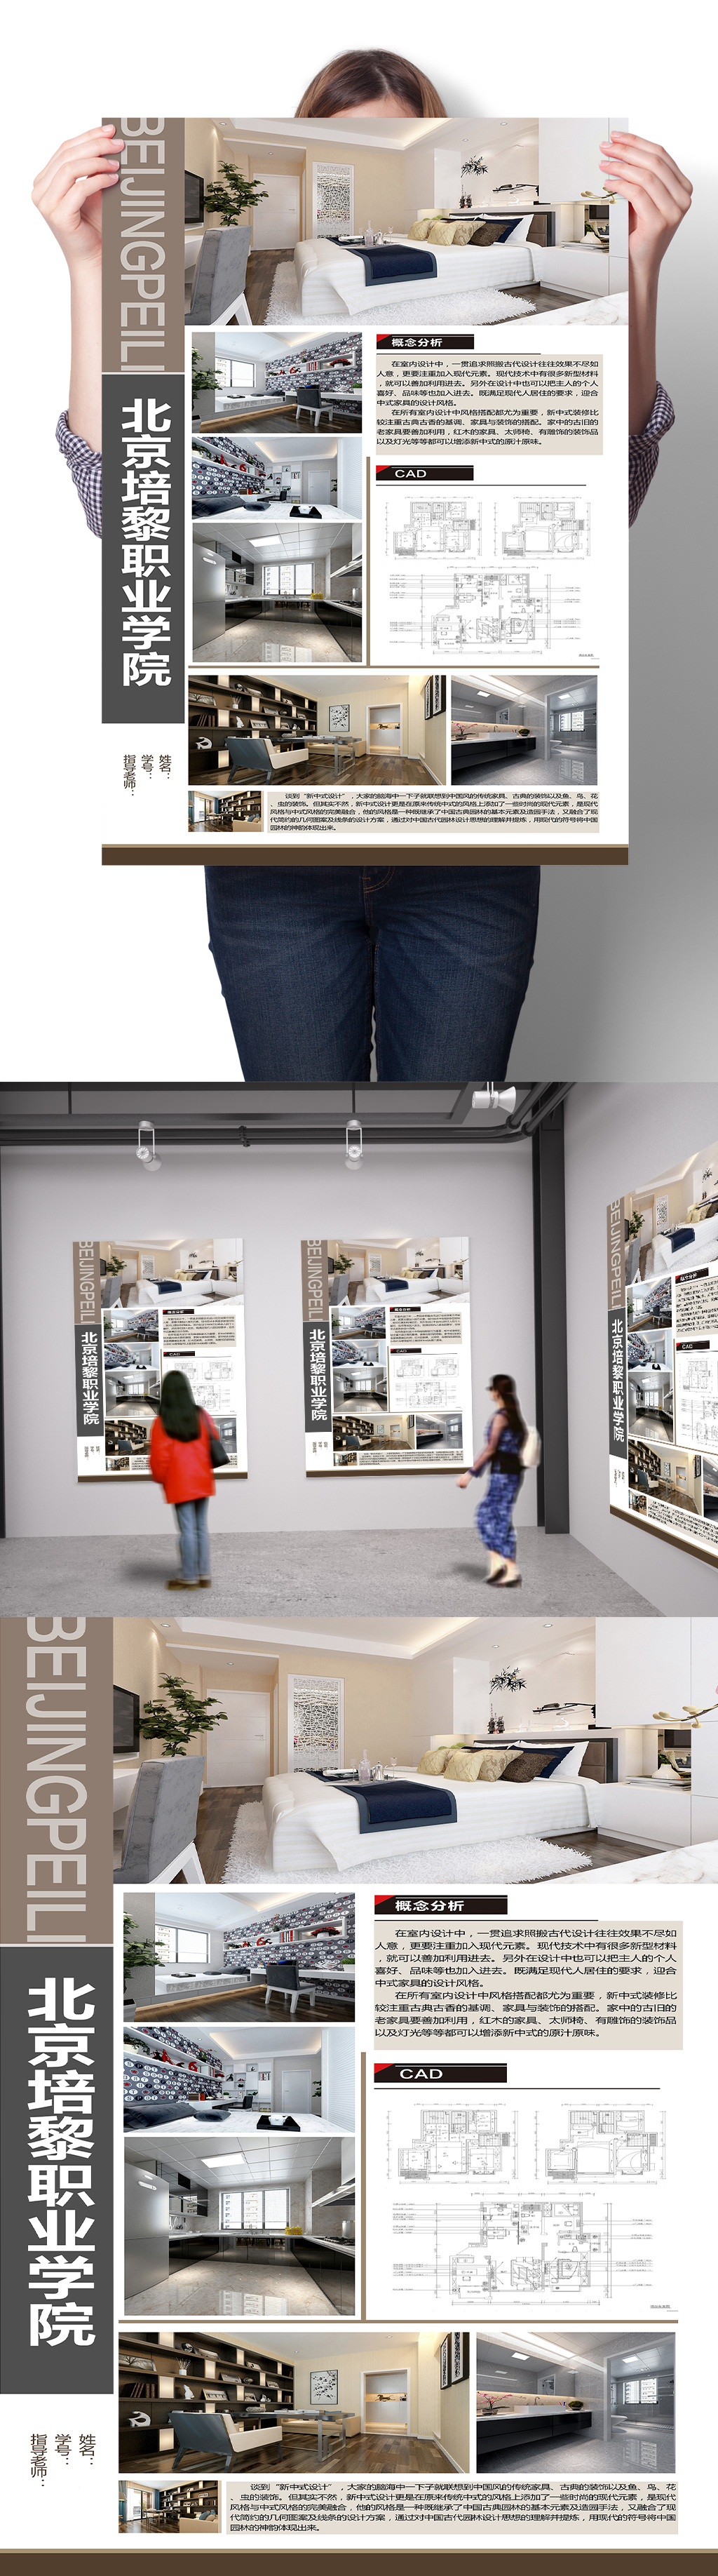 现代典雅家居空间设计图 室内设计毕业展海报展板